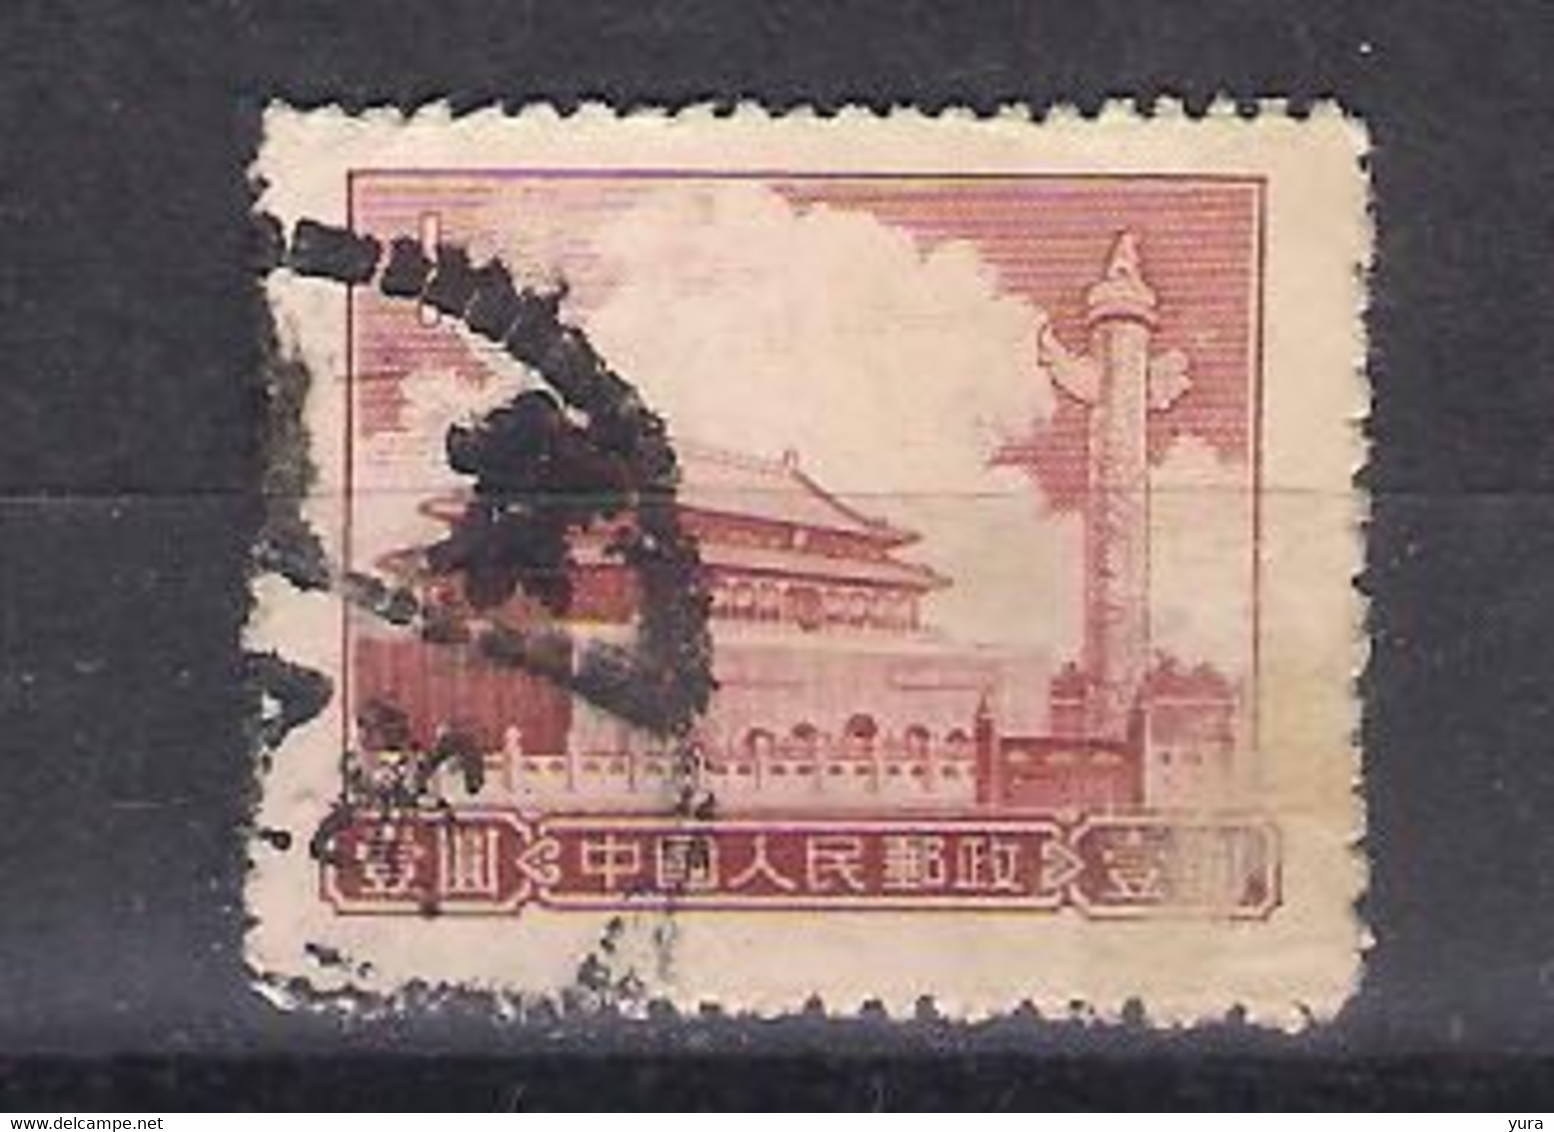 China Peoples  Republic  1955  Mi Nr 306  (a8p4) - Oblitérés